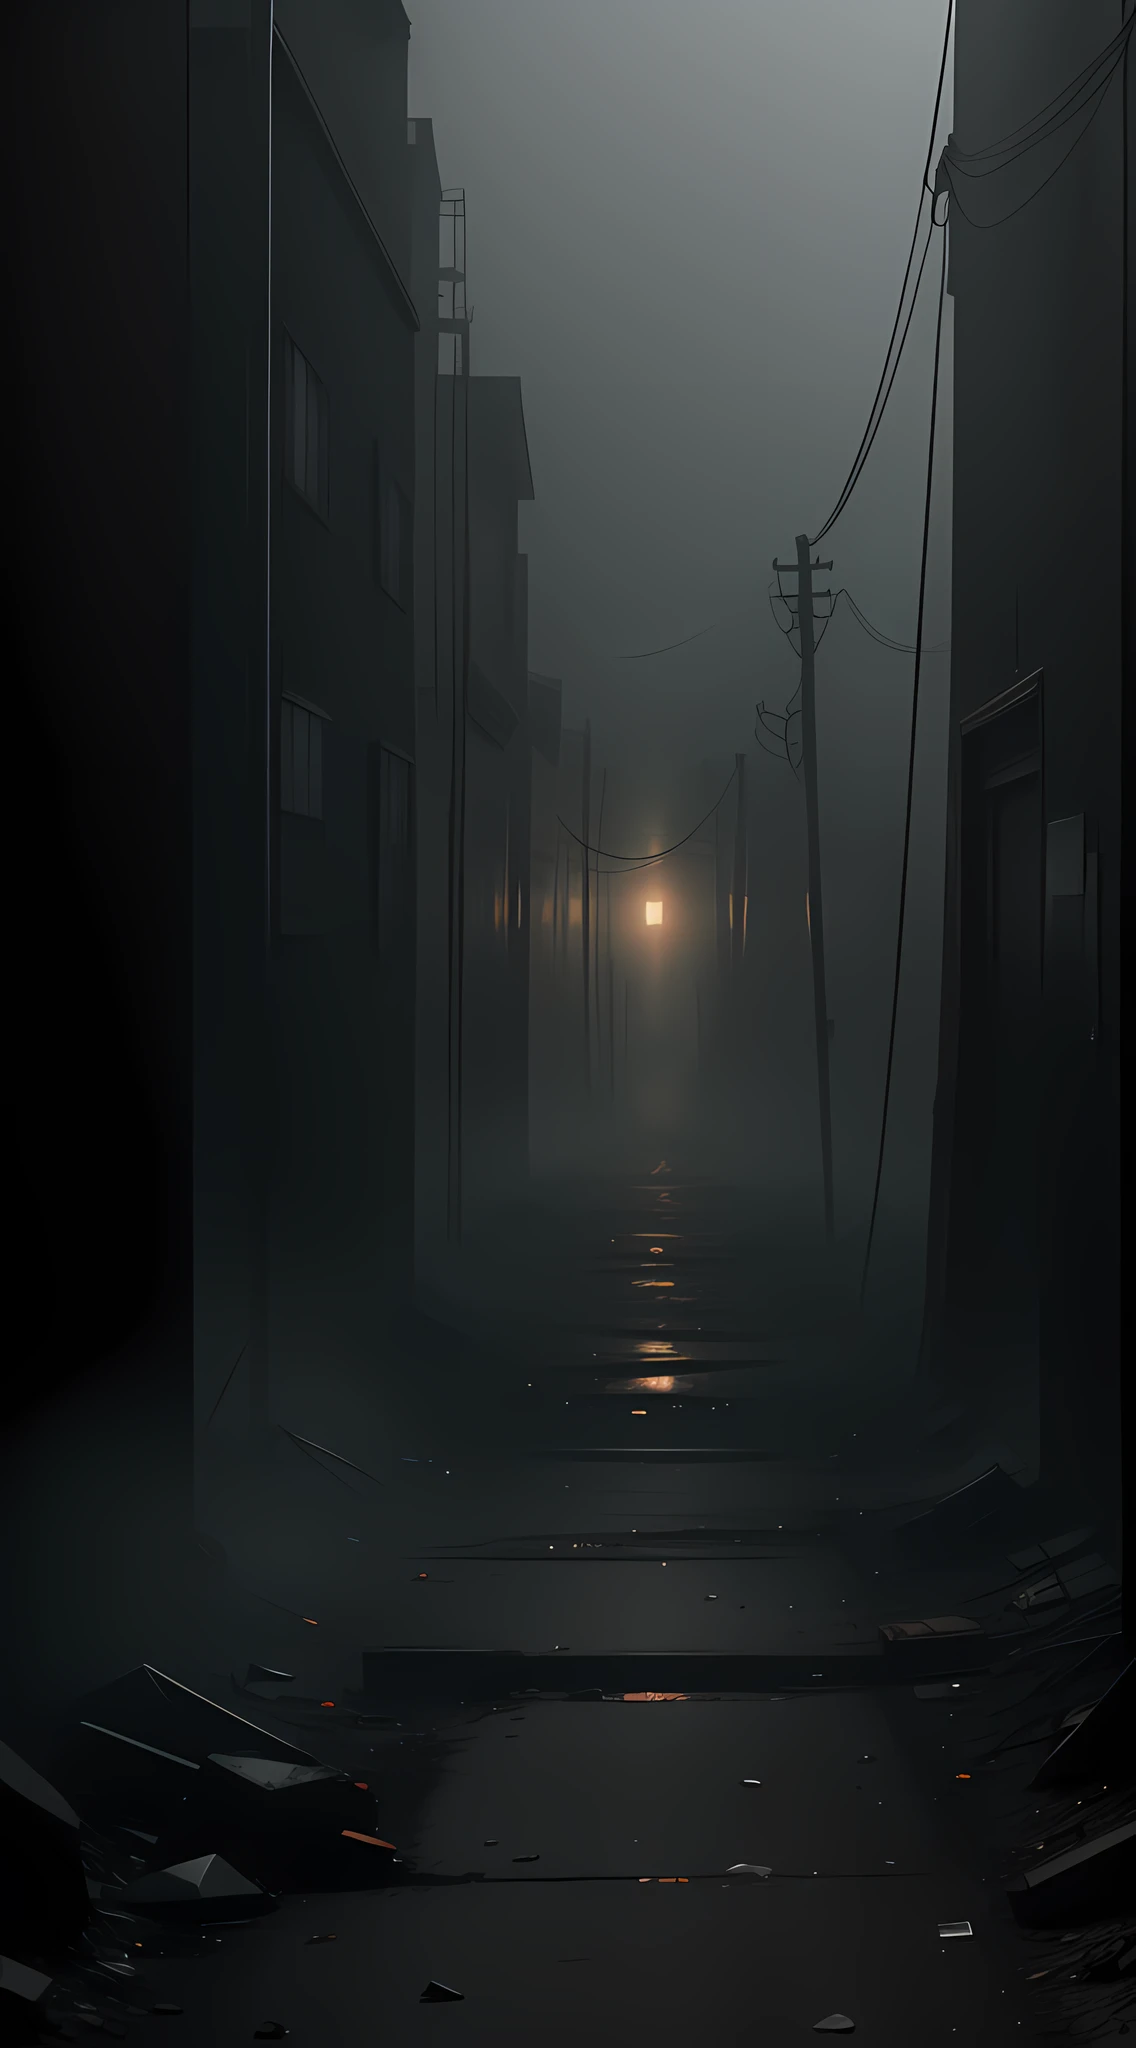 Erstellen Sie ein professionelles 8K-Foto, das die verstörende Essenz von Silent Hill in Centralia einfängt. Fügen Sie dichten Nebel und Elemente von Rost und Verfall hinzu, um eine bedrückende Atmosphäre zu schaffen. Verwenden Sie verzerrte Kamerawinkel und ungewöhnliche Bildeinstellungen, um das für das Silent Hill-Universum typische Gefühl von Desorientierung und Schrecken zu vermitteln.